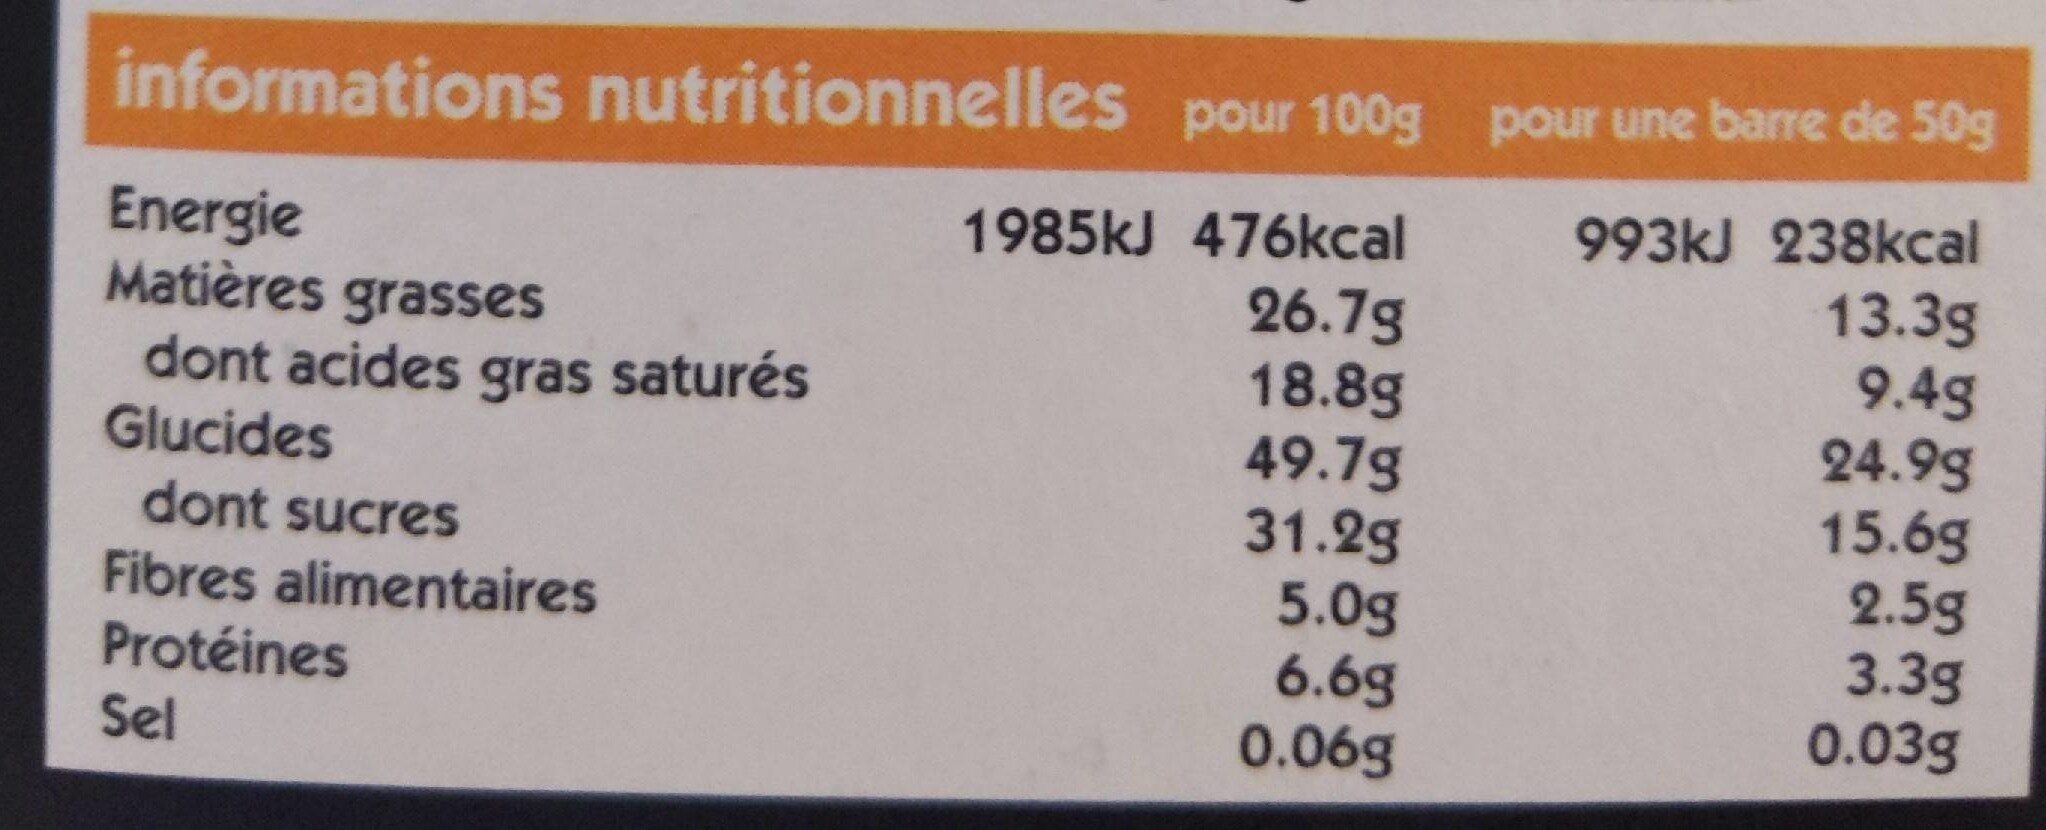 Barres enrobées aux fruits secs amande et abricot - Información nutricional - fr